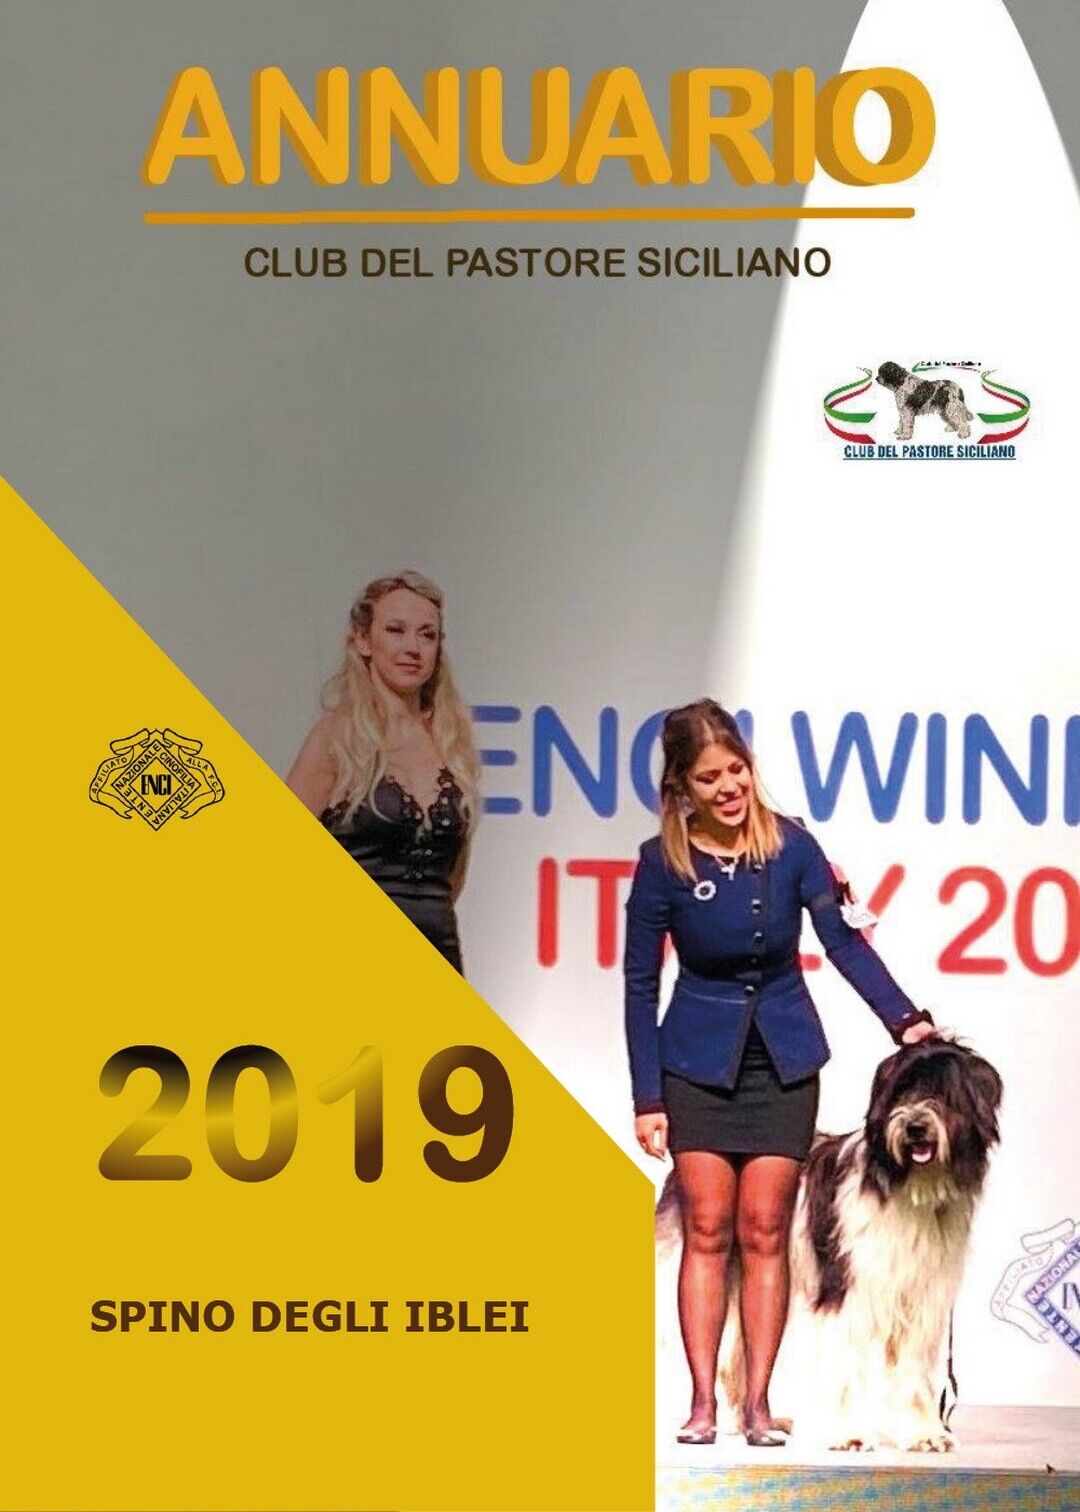 Annuario 2019 Spino degli Iblei, Club Del Pastore Siciliano,  2020,  Youcanprint